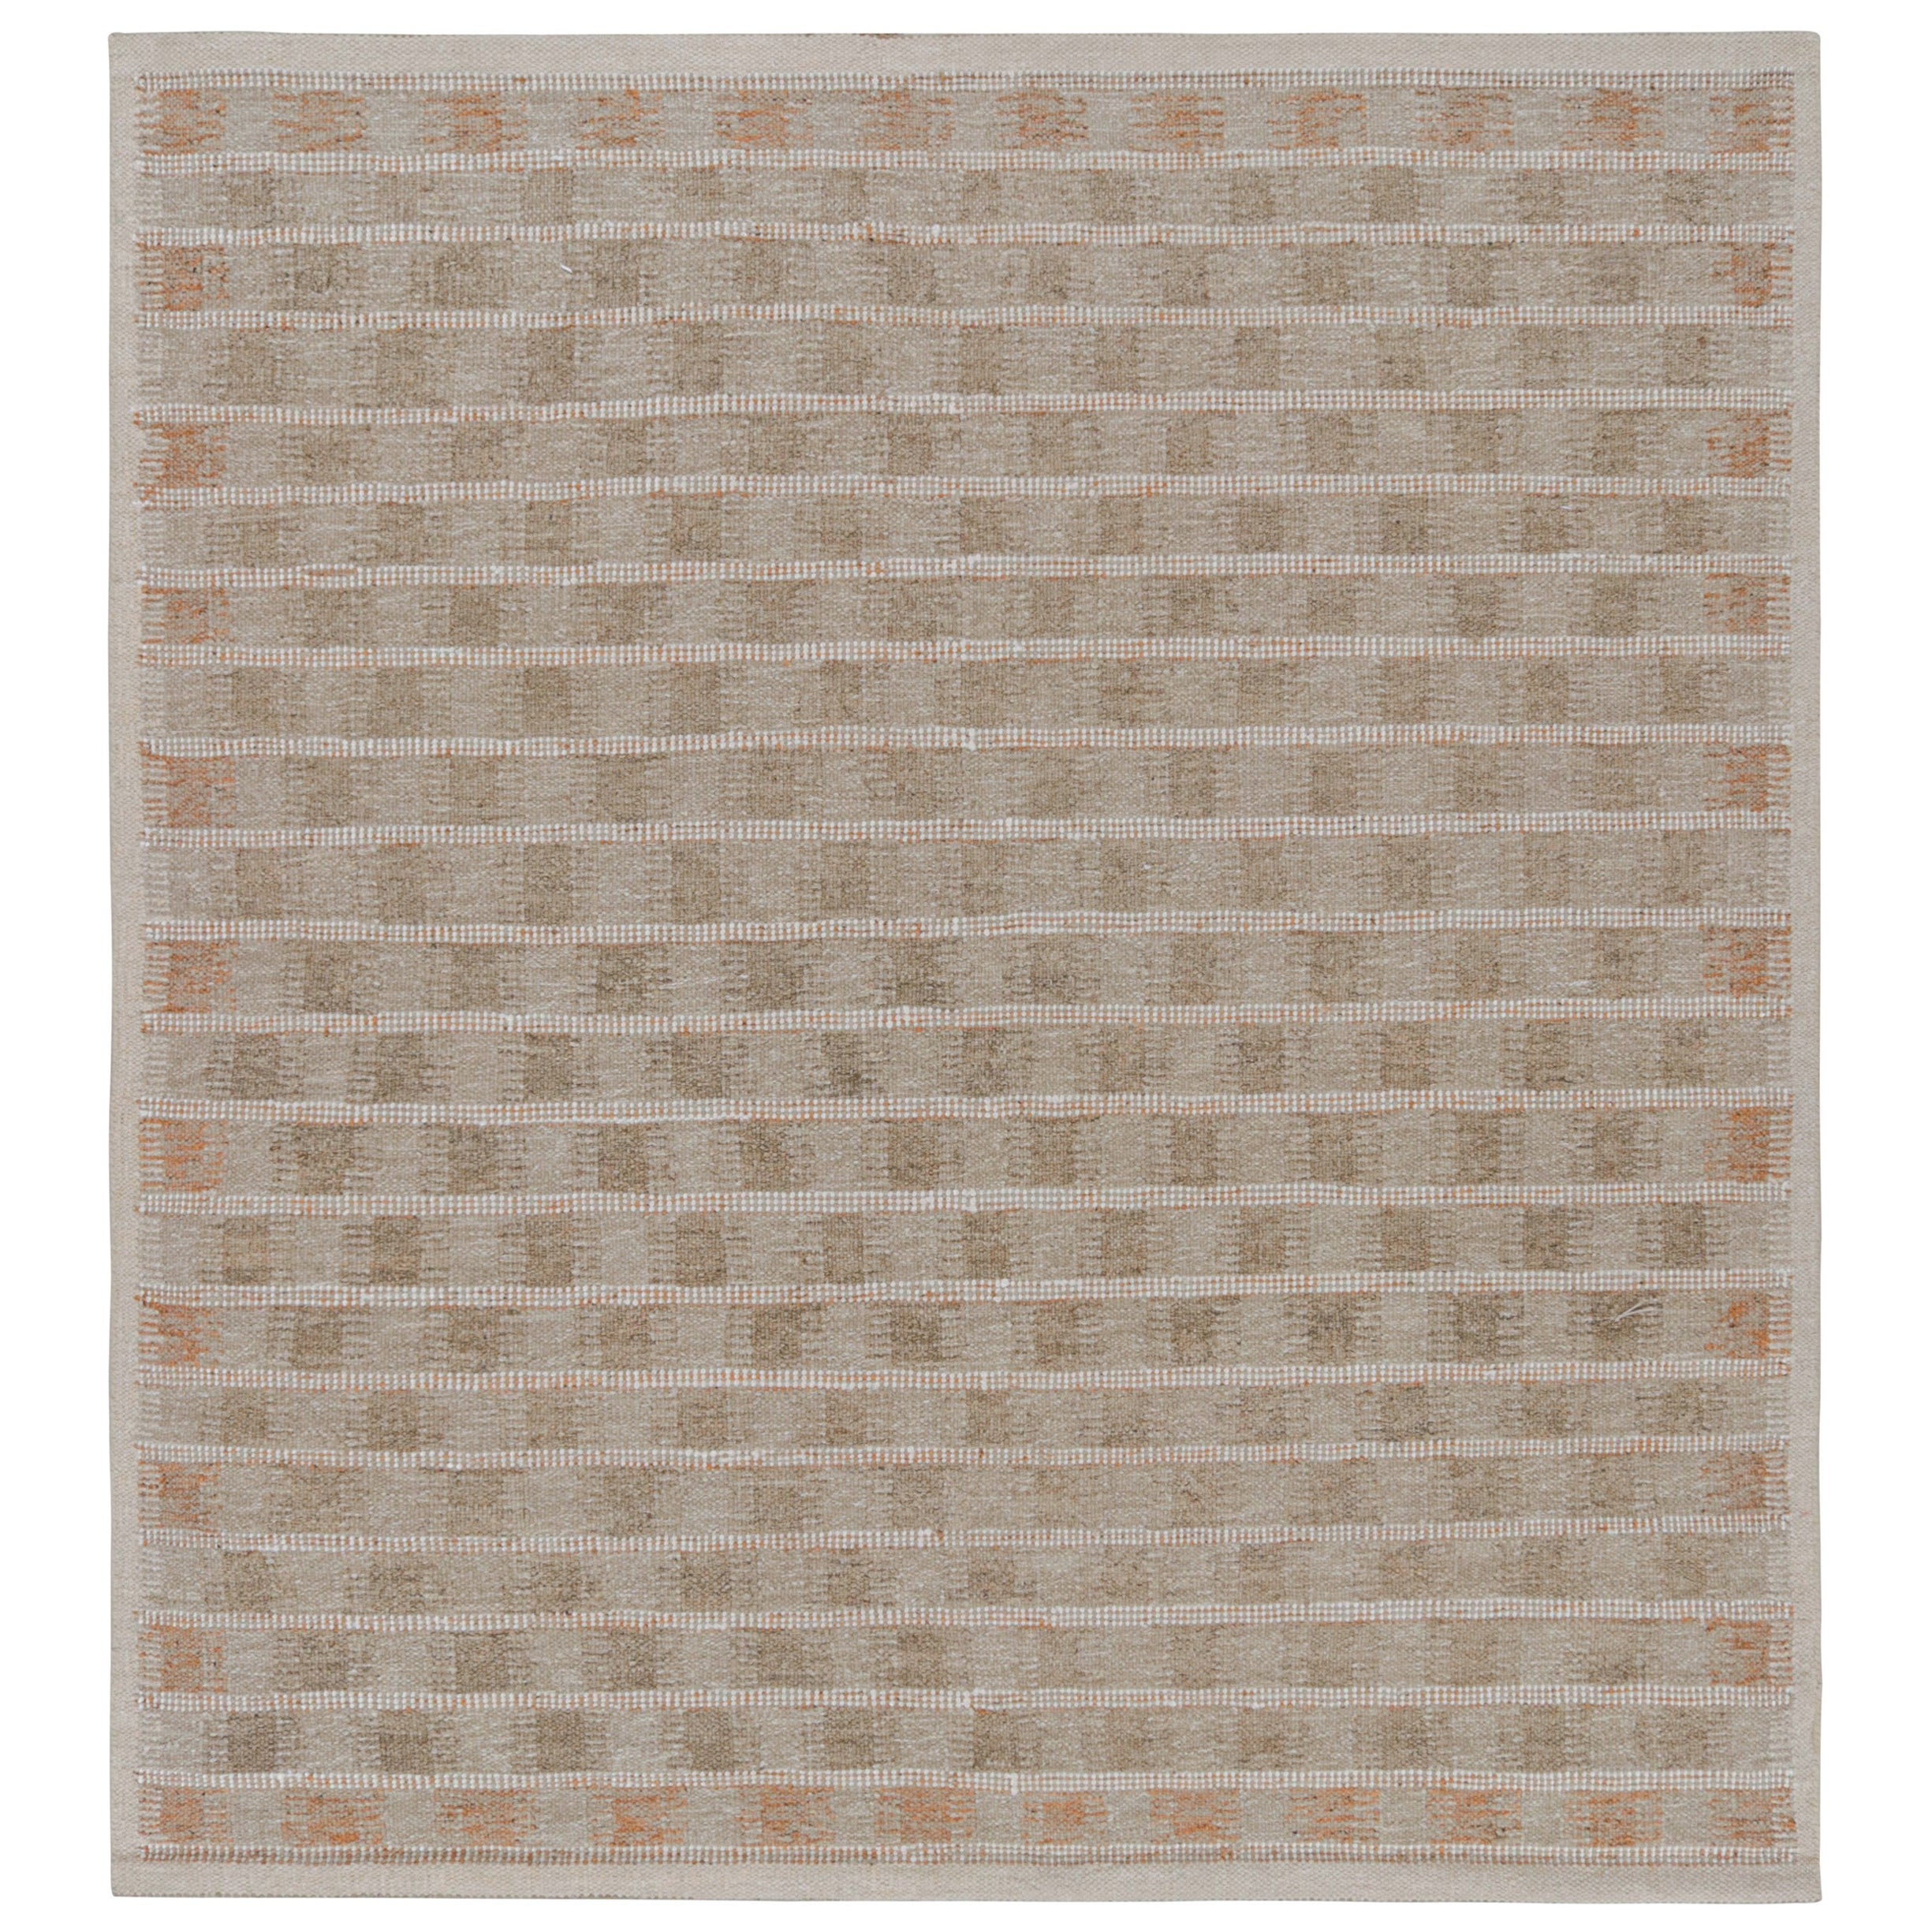 Rug & Kilim's Scandinavian Style Square Rug in Beige-Brown Geometric Patterns (tapis carré de style scandinave à motifs géométriques beige et marron) en vente